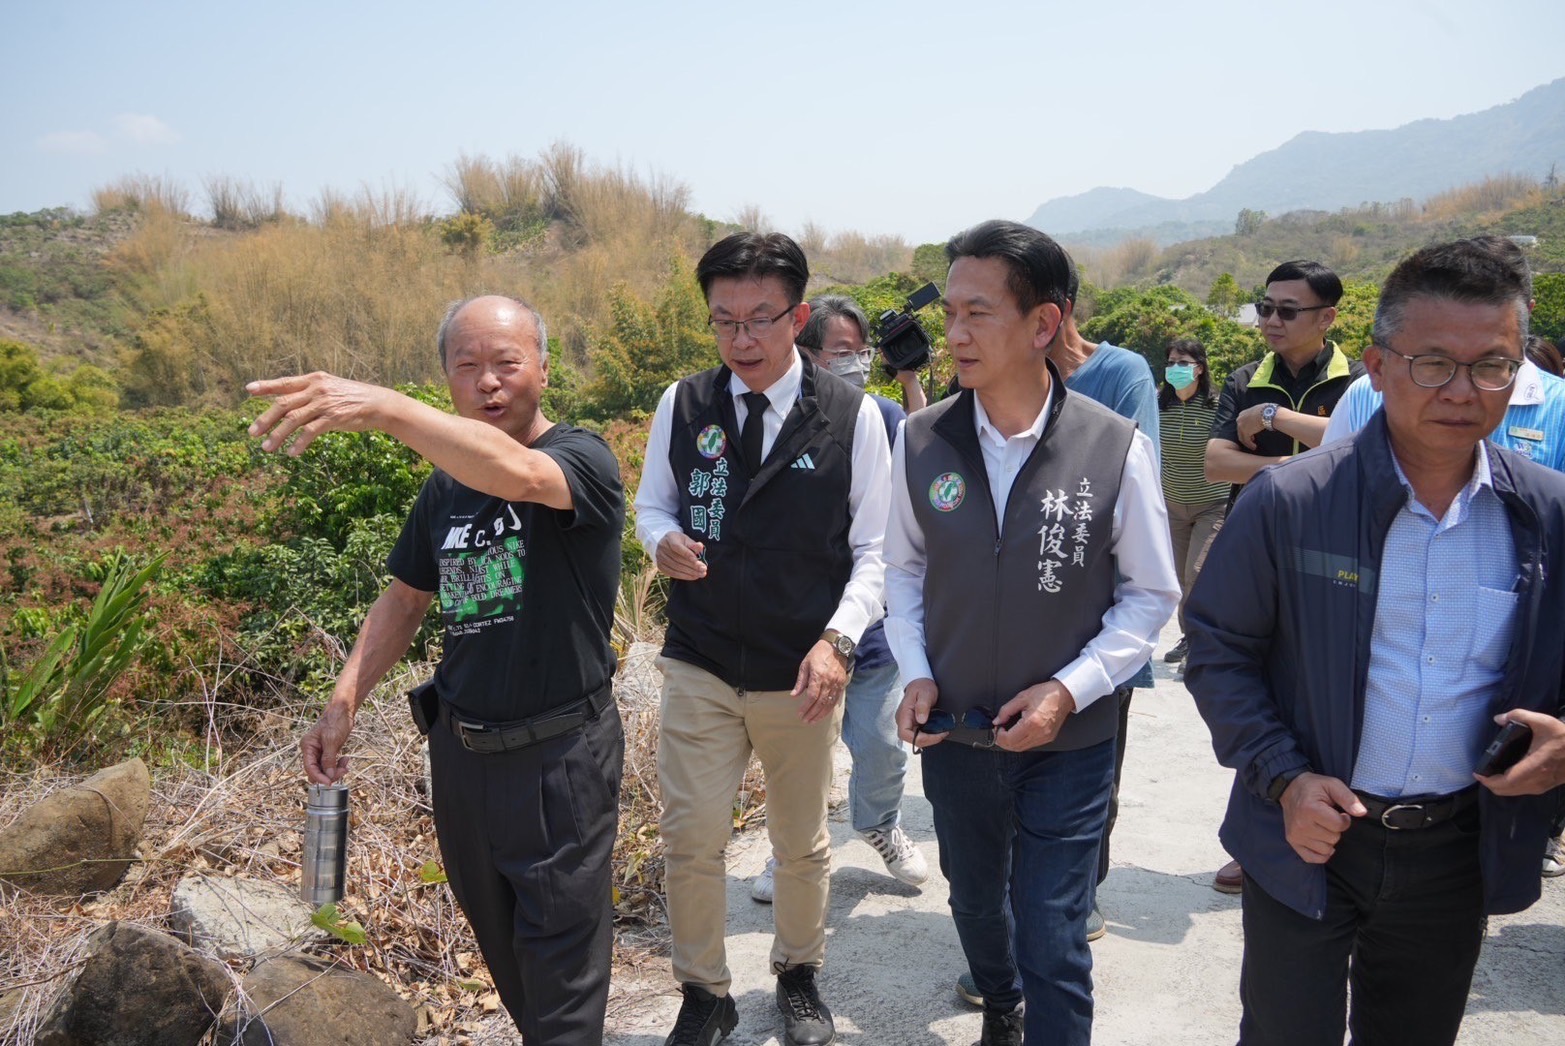 立委郭国文（左二）、林俊宪（右二）上月底会勘台南的农损。图／郭国文服务处提供